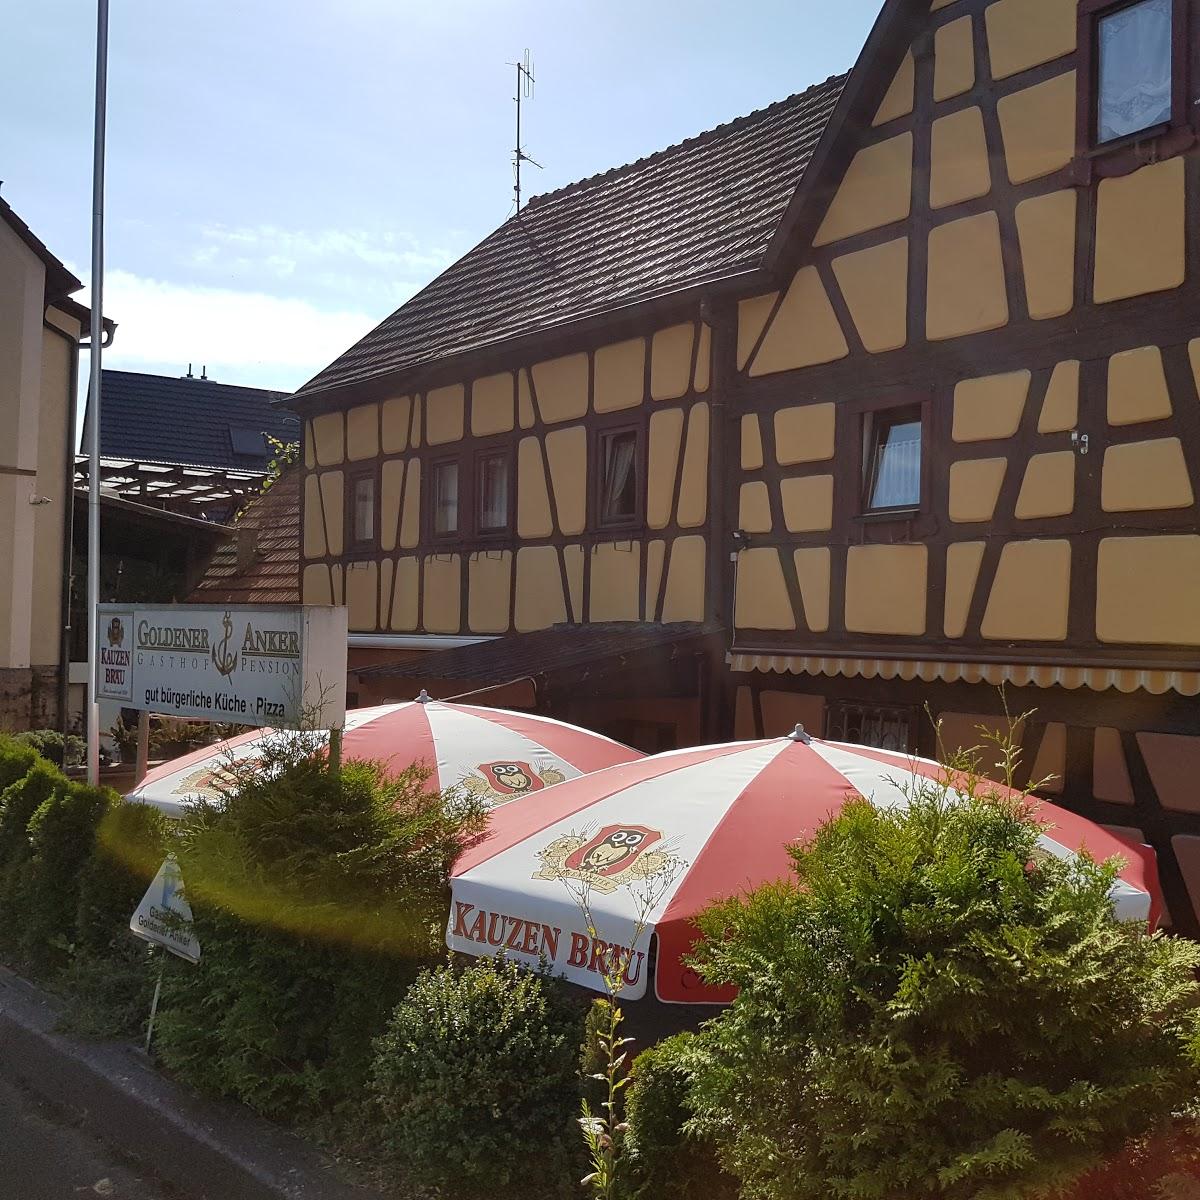 Restaurant "Goldener Anker" in Frankfurt am Main